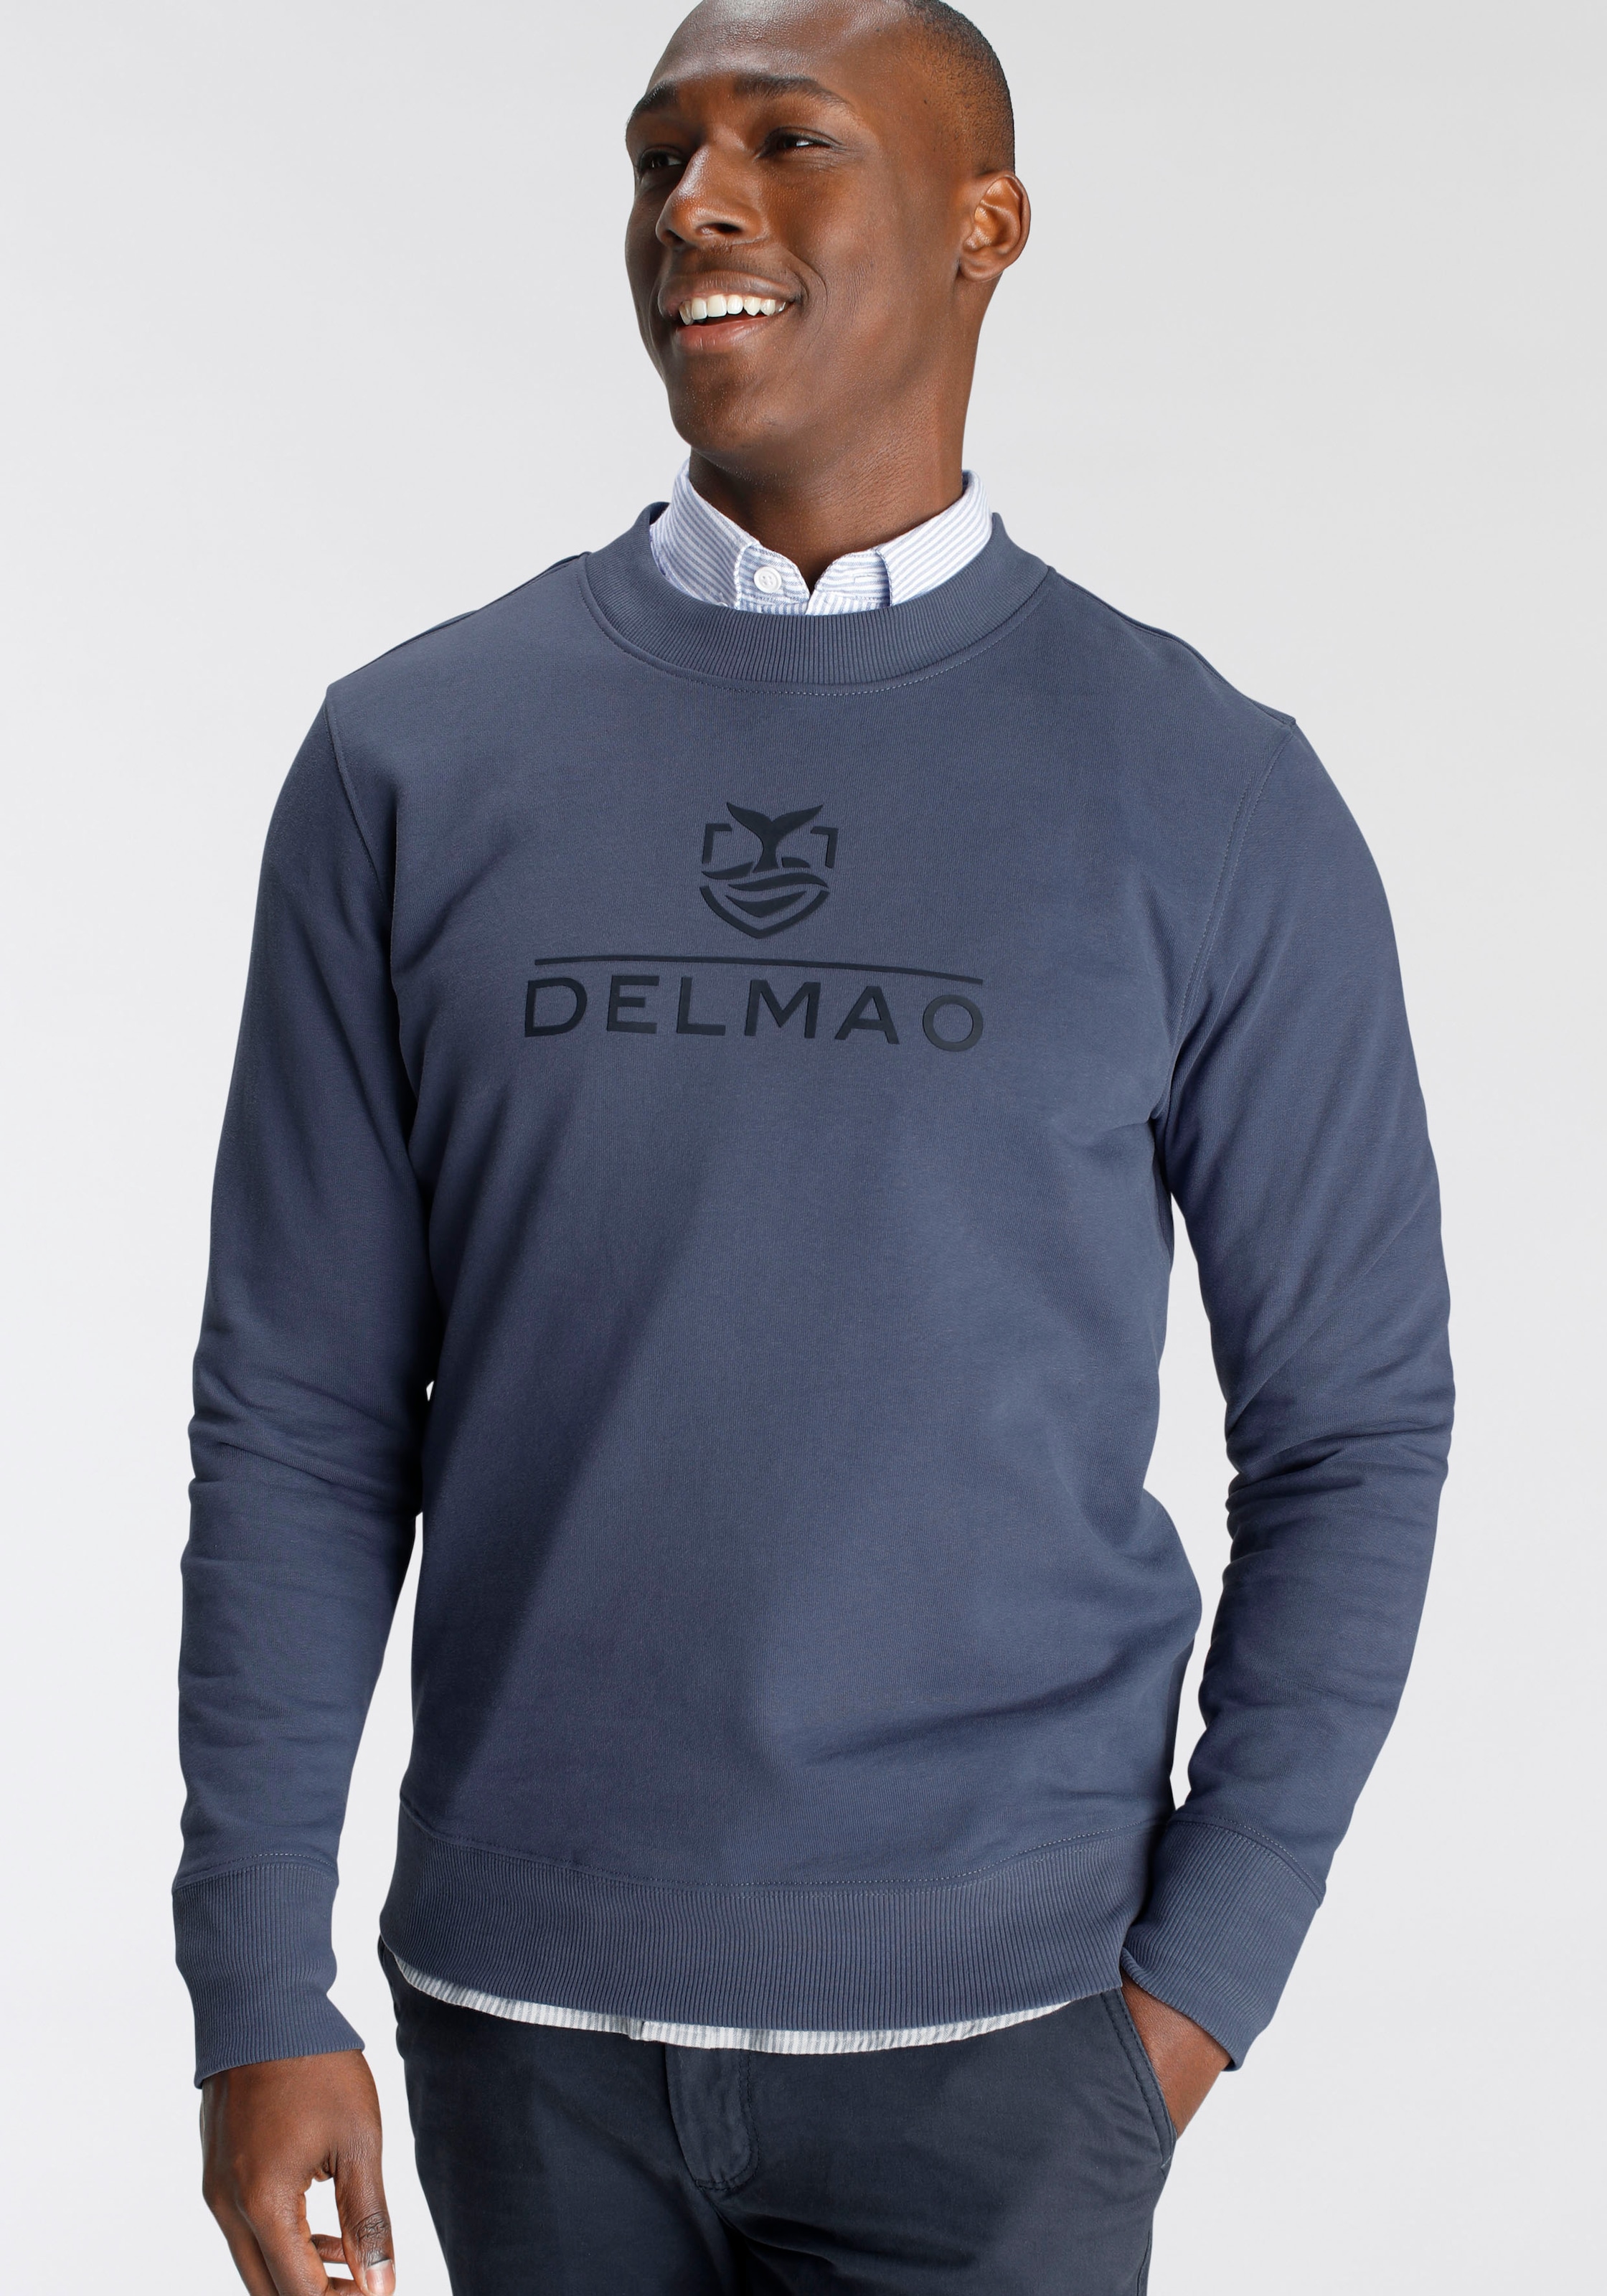 DELMAO Sweatshirt, mit Markenprint- NEUE MARKE! online kaufen bei OTTO